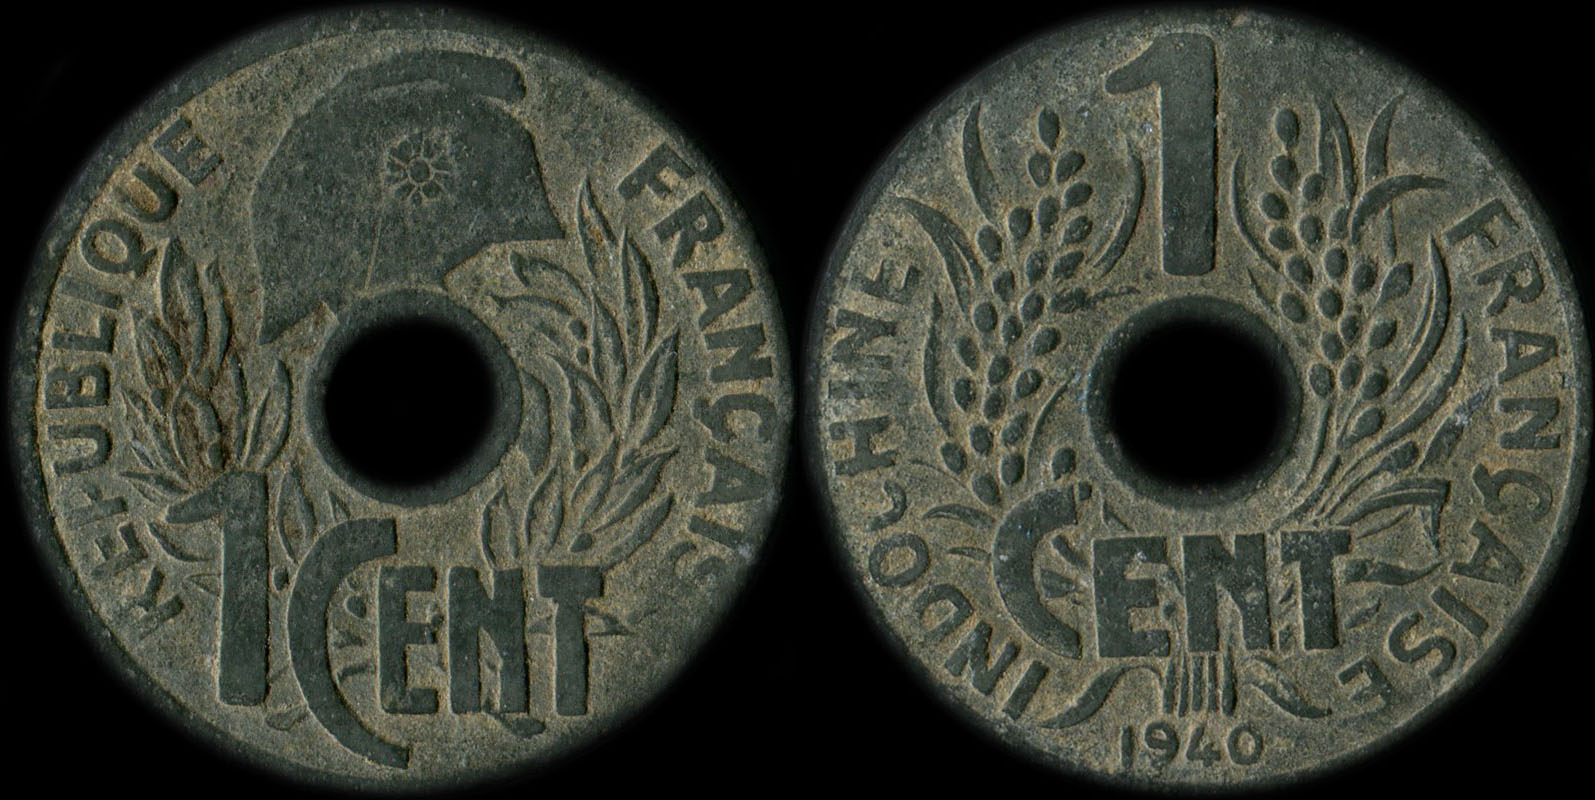 Pice de 1 centime Indochine 1940 avec lotus